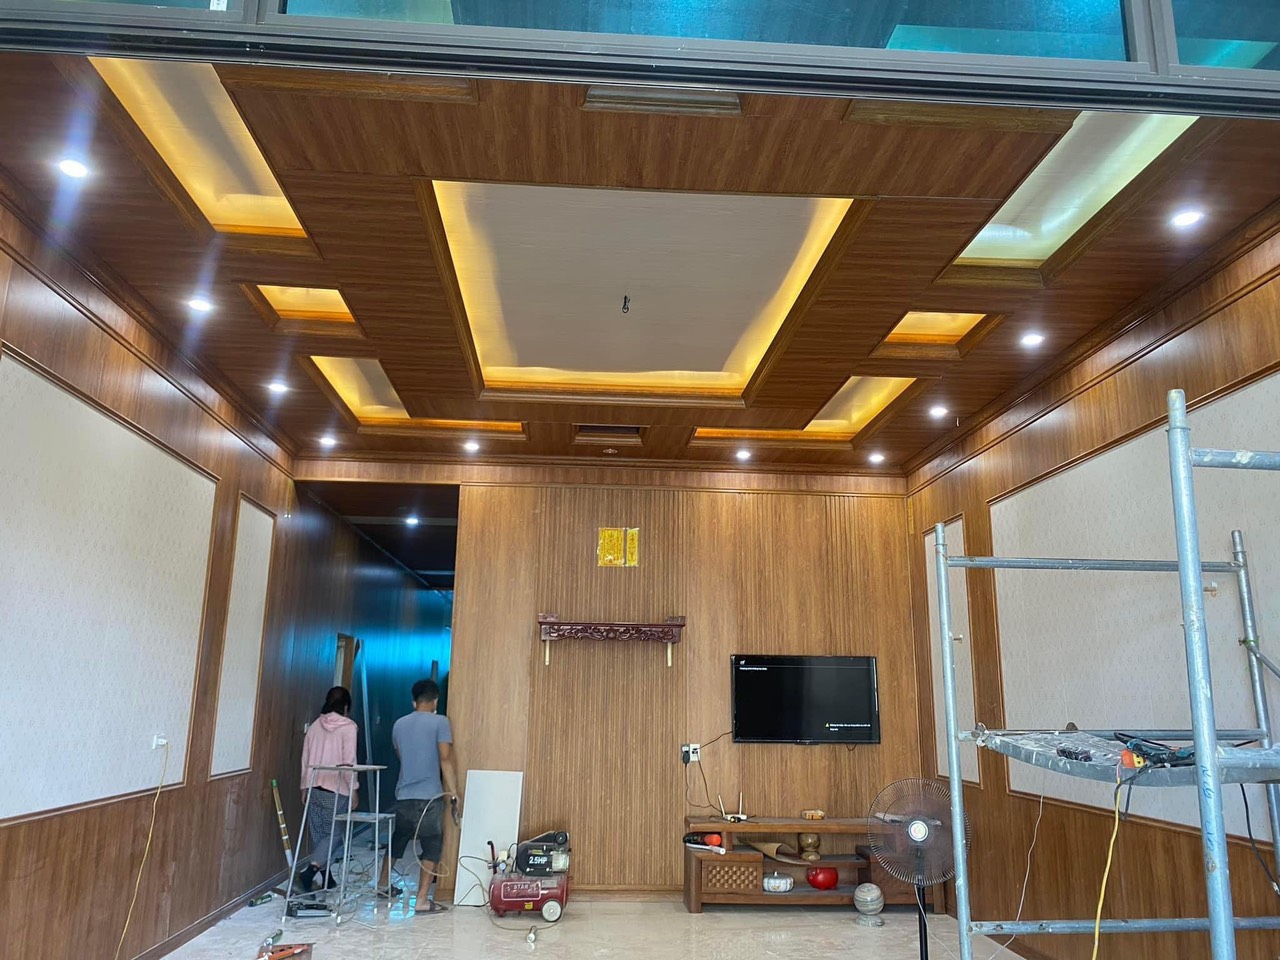 Nhất Tín thi công ốp trần trang trí trong nhà tại Phú Thiện - Gia Lai